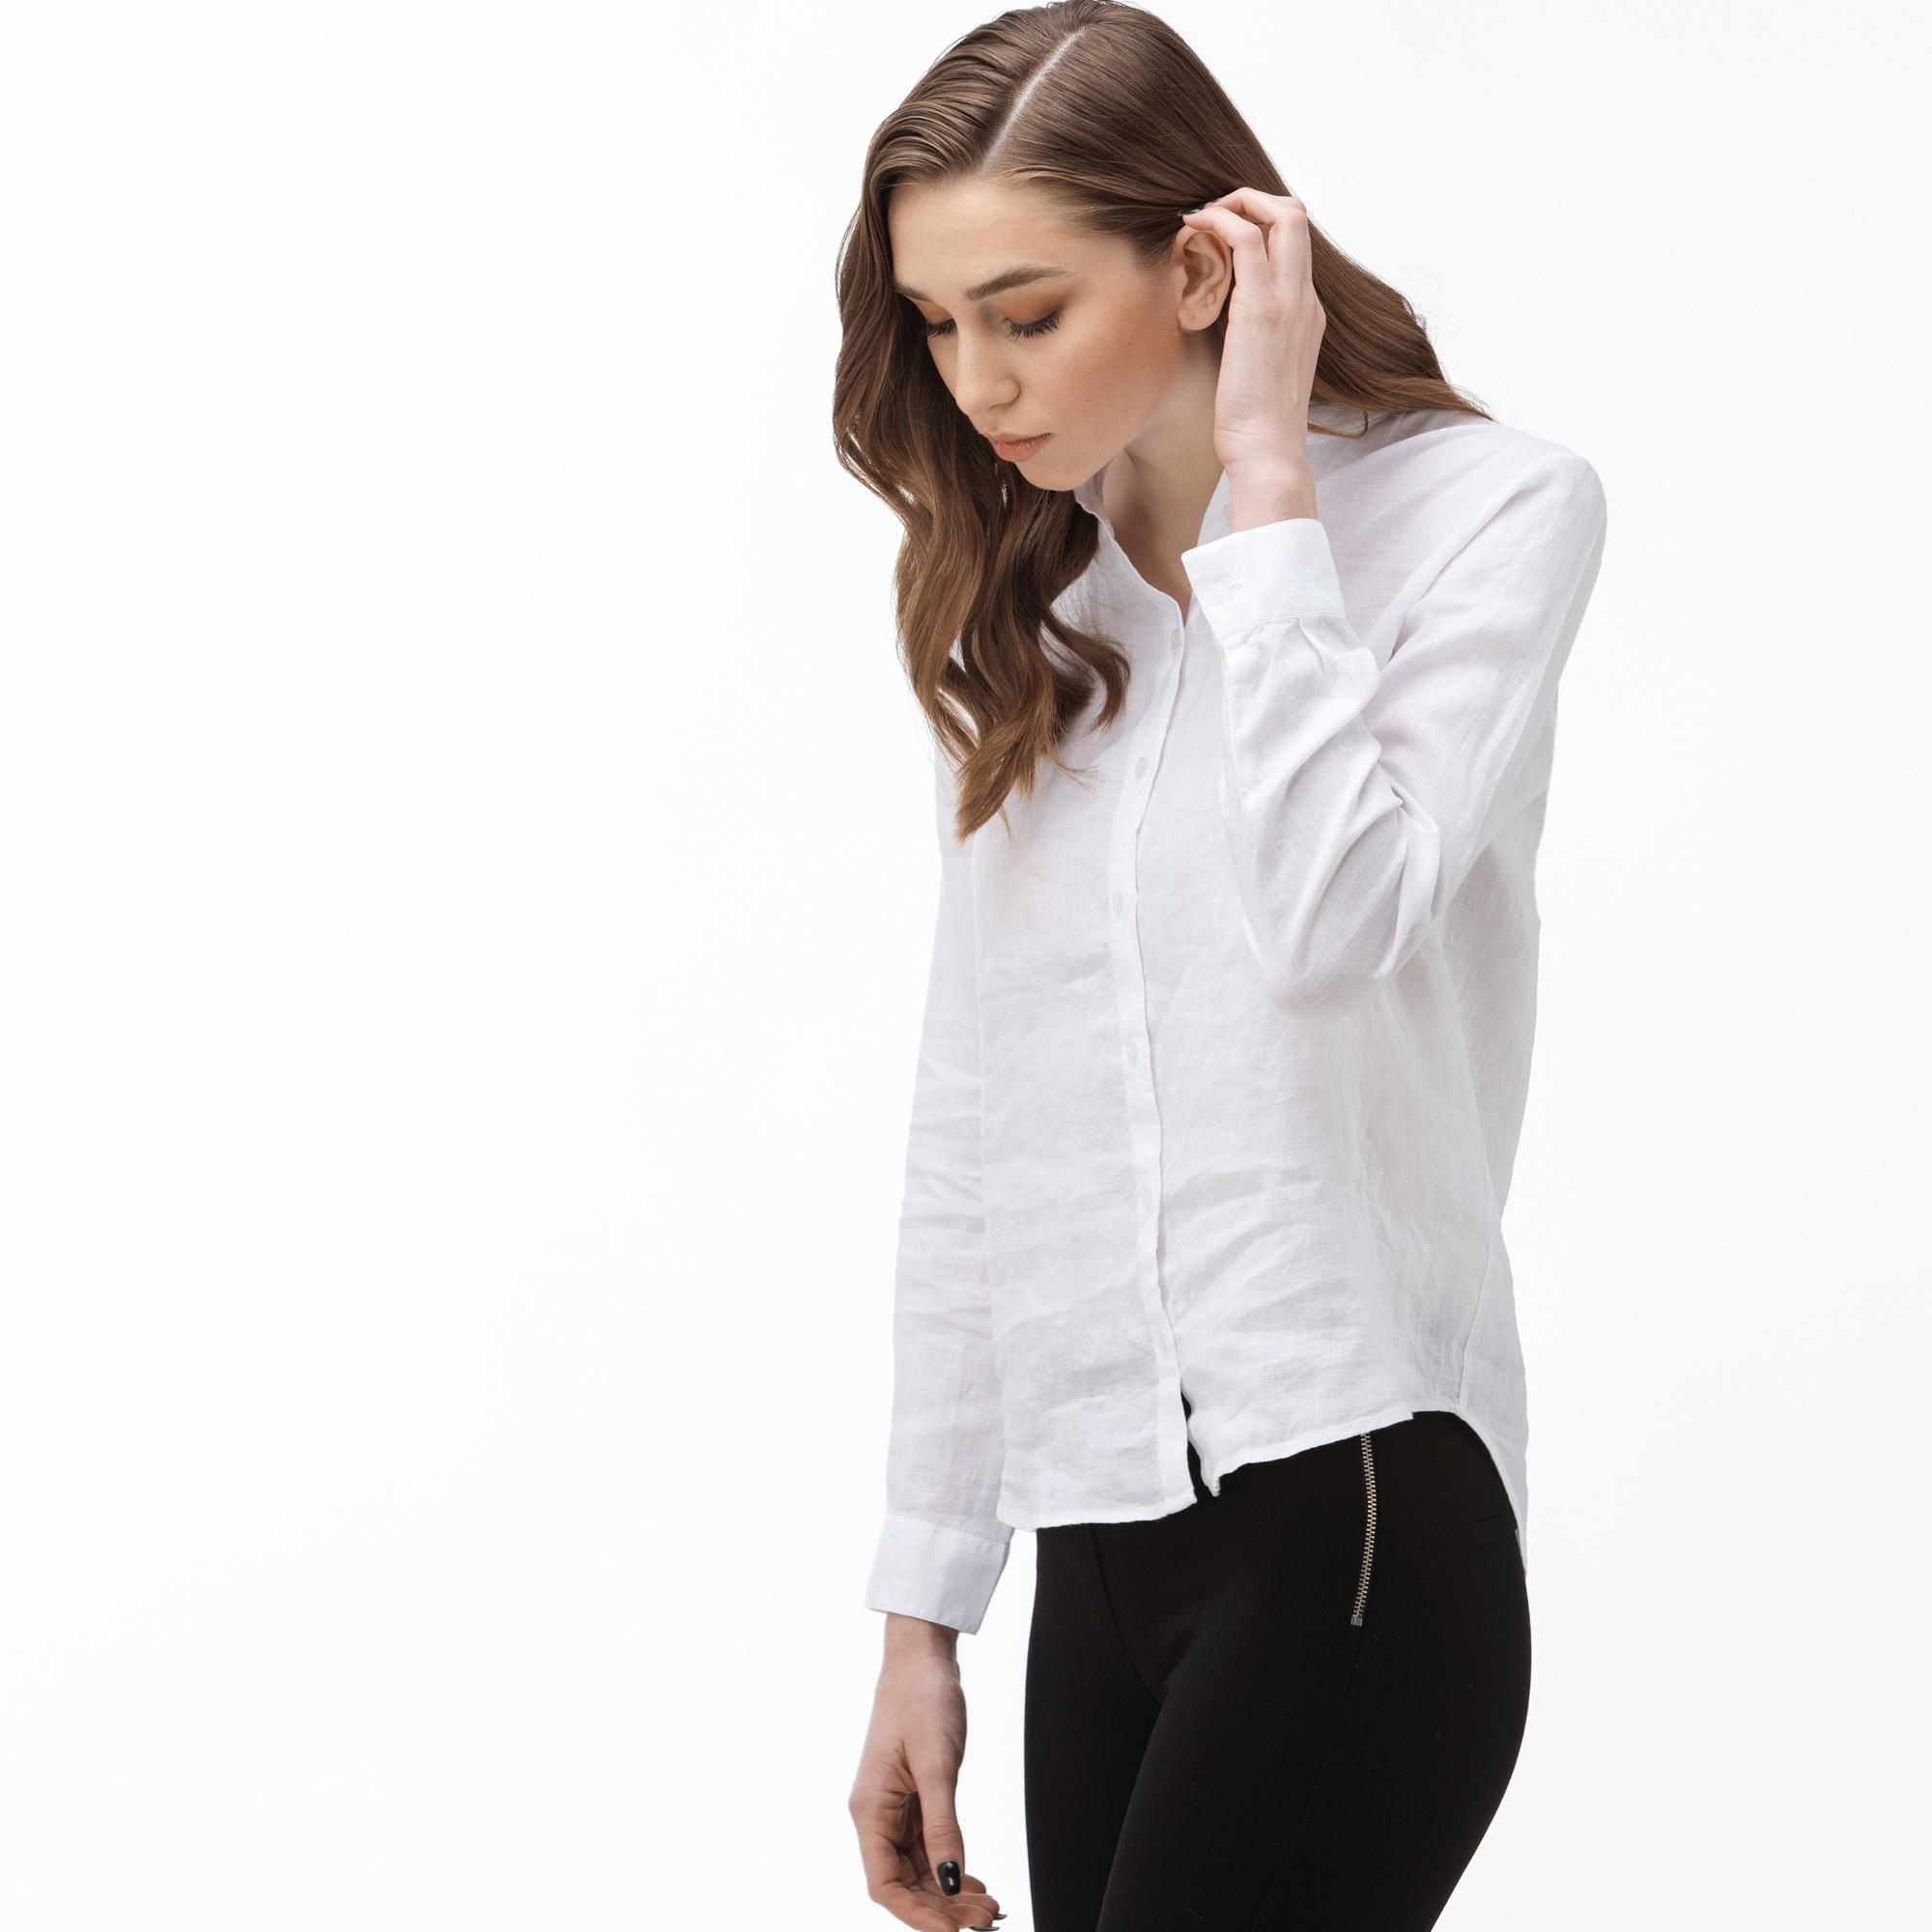 Lacoste Women's Stand-Up Collar Linen Shirt